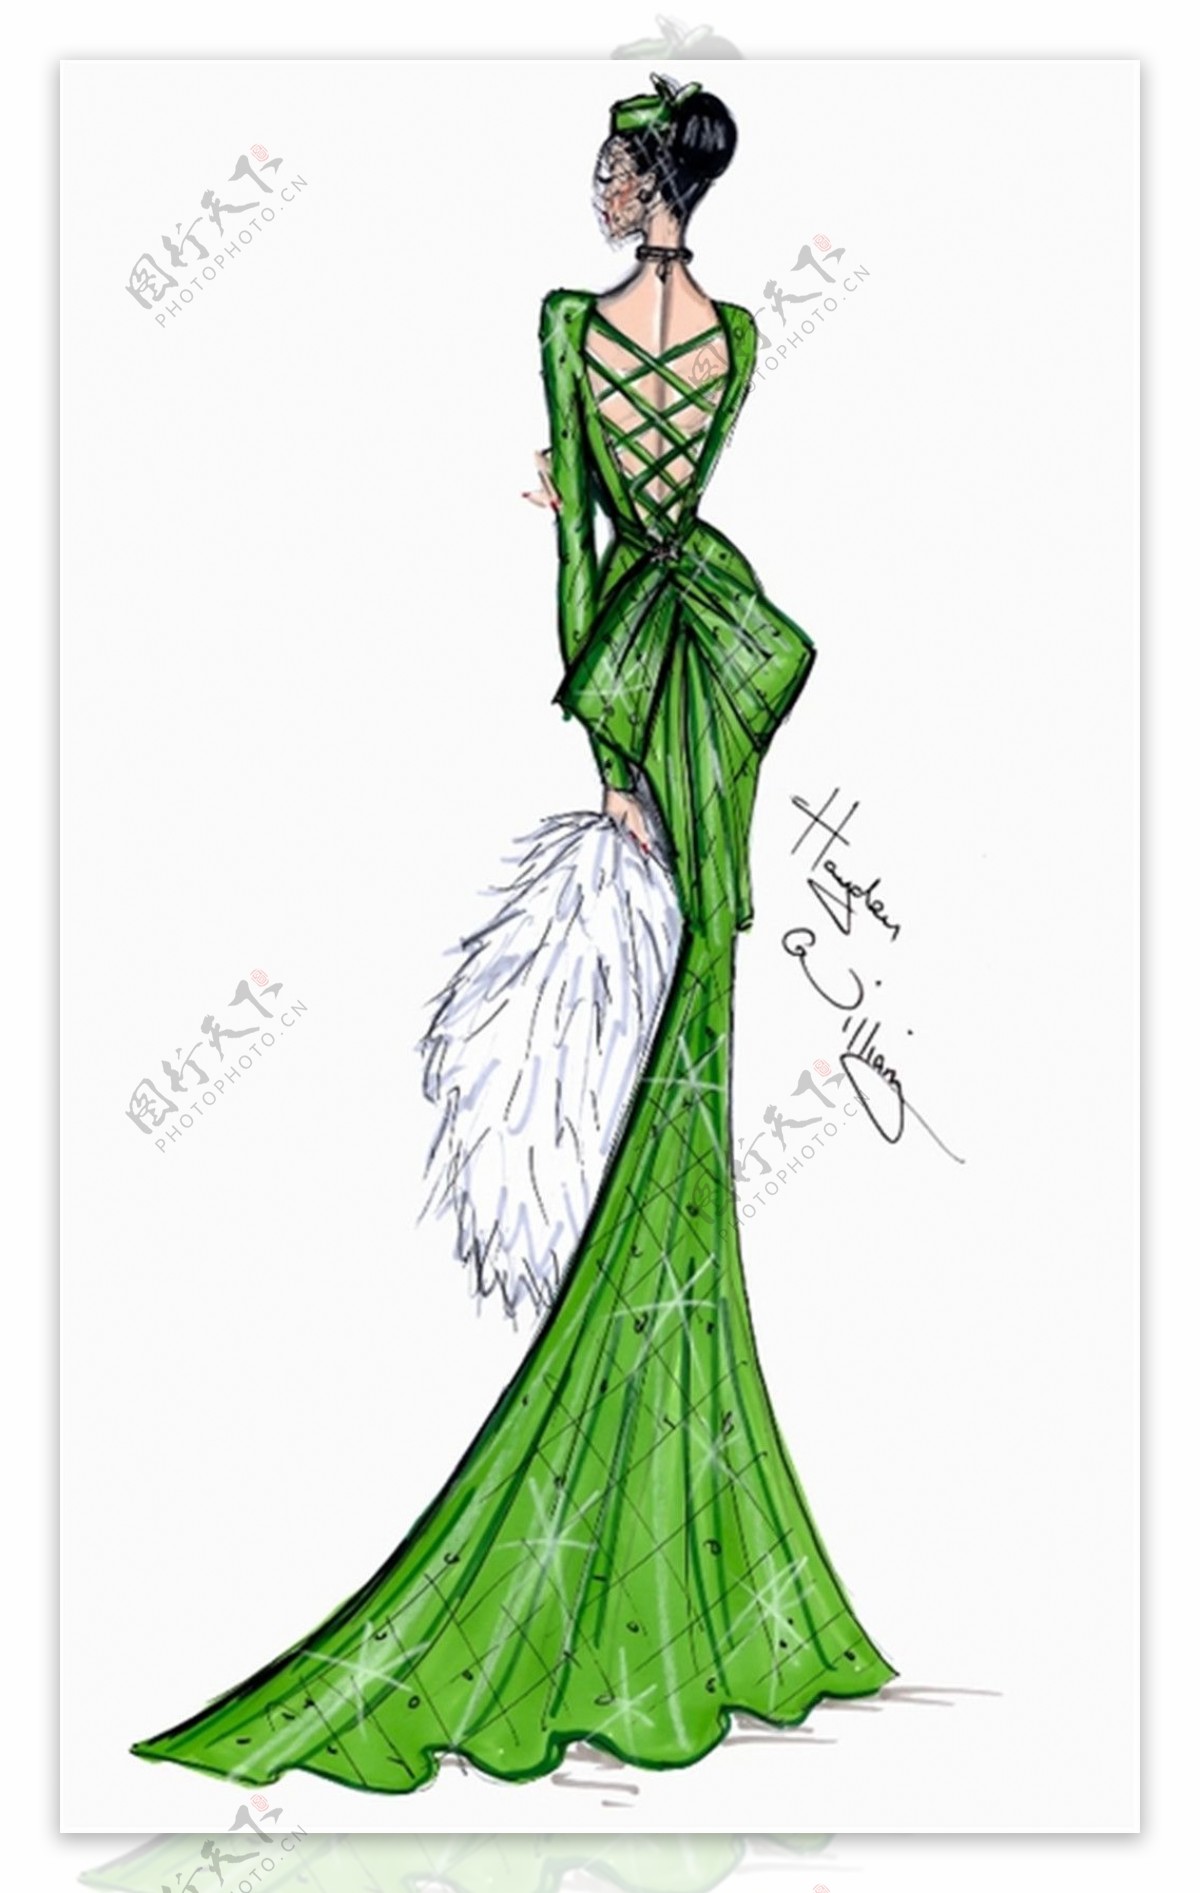 绿色鱼尾婚纱长裙设计图